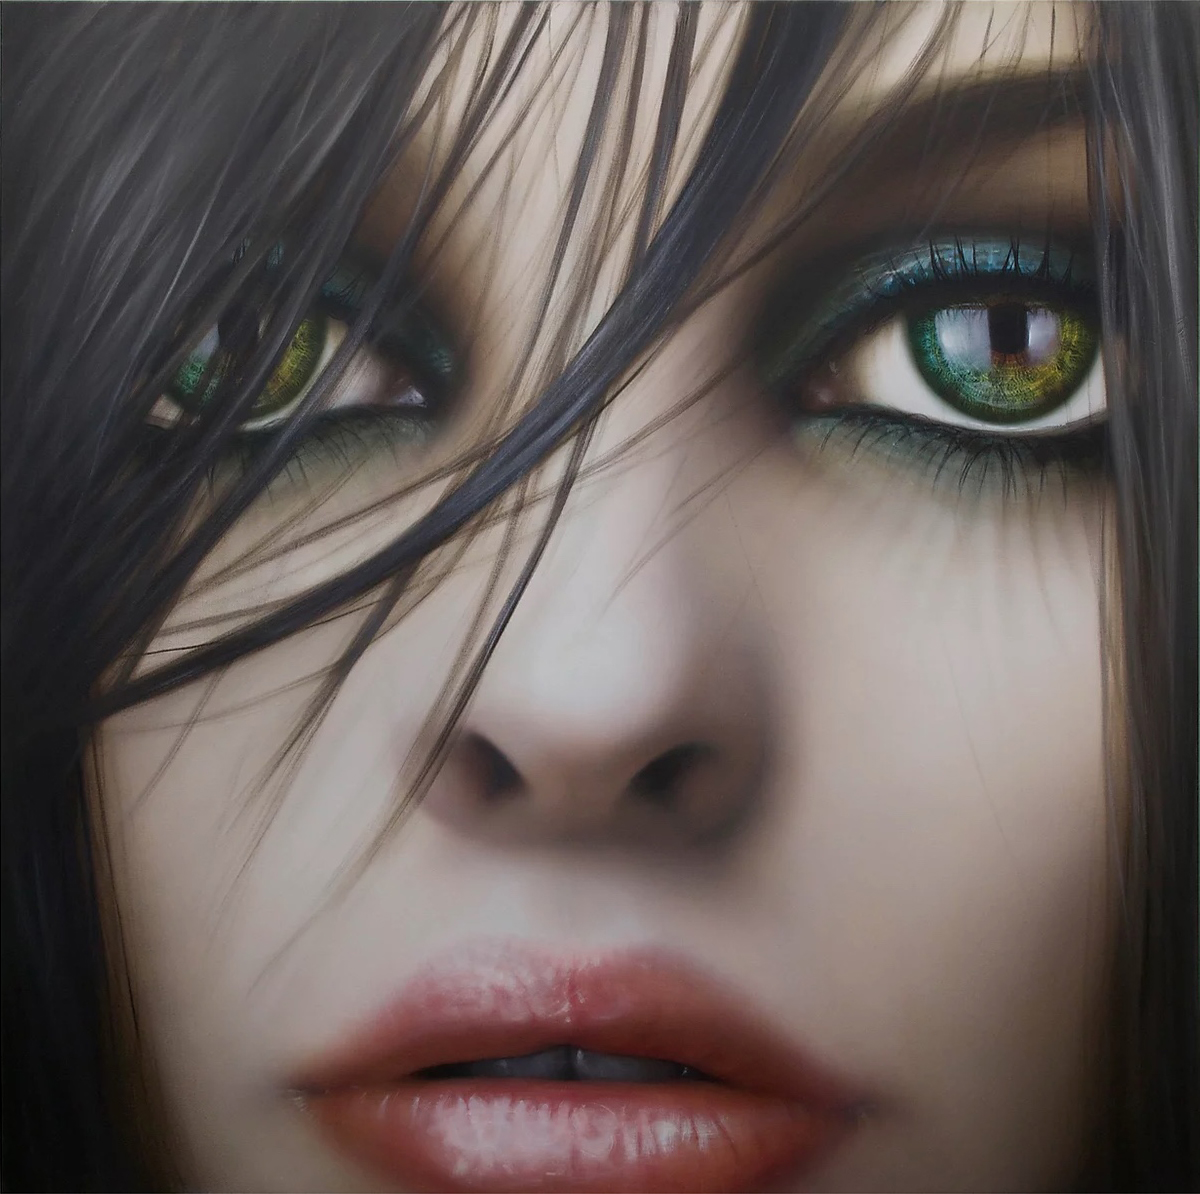 Machiko Edmondson's Face Paint